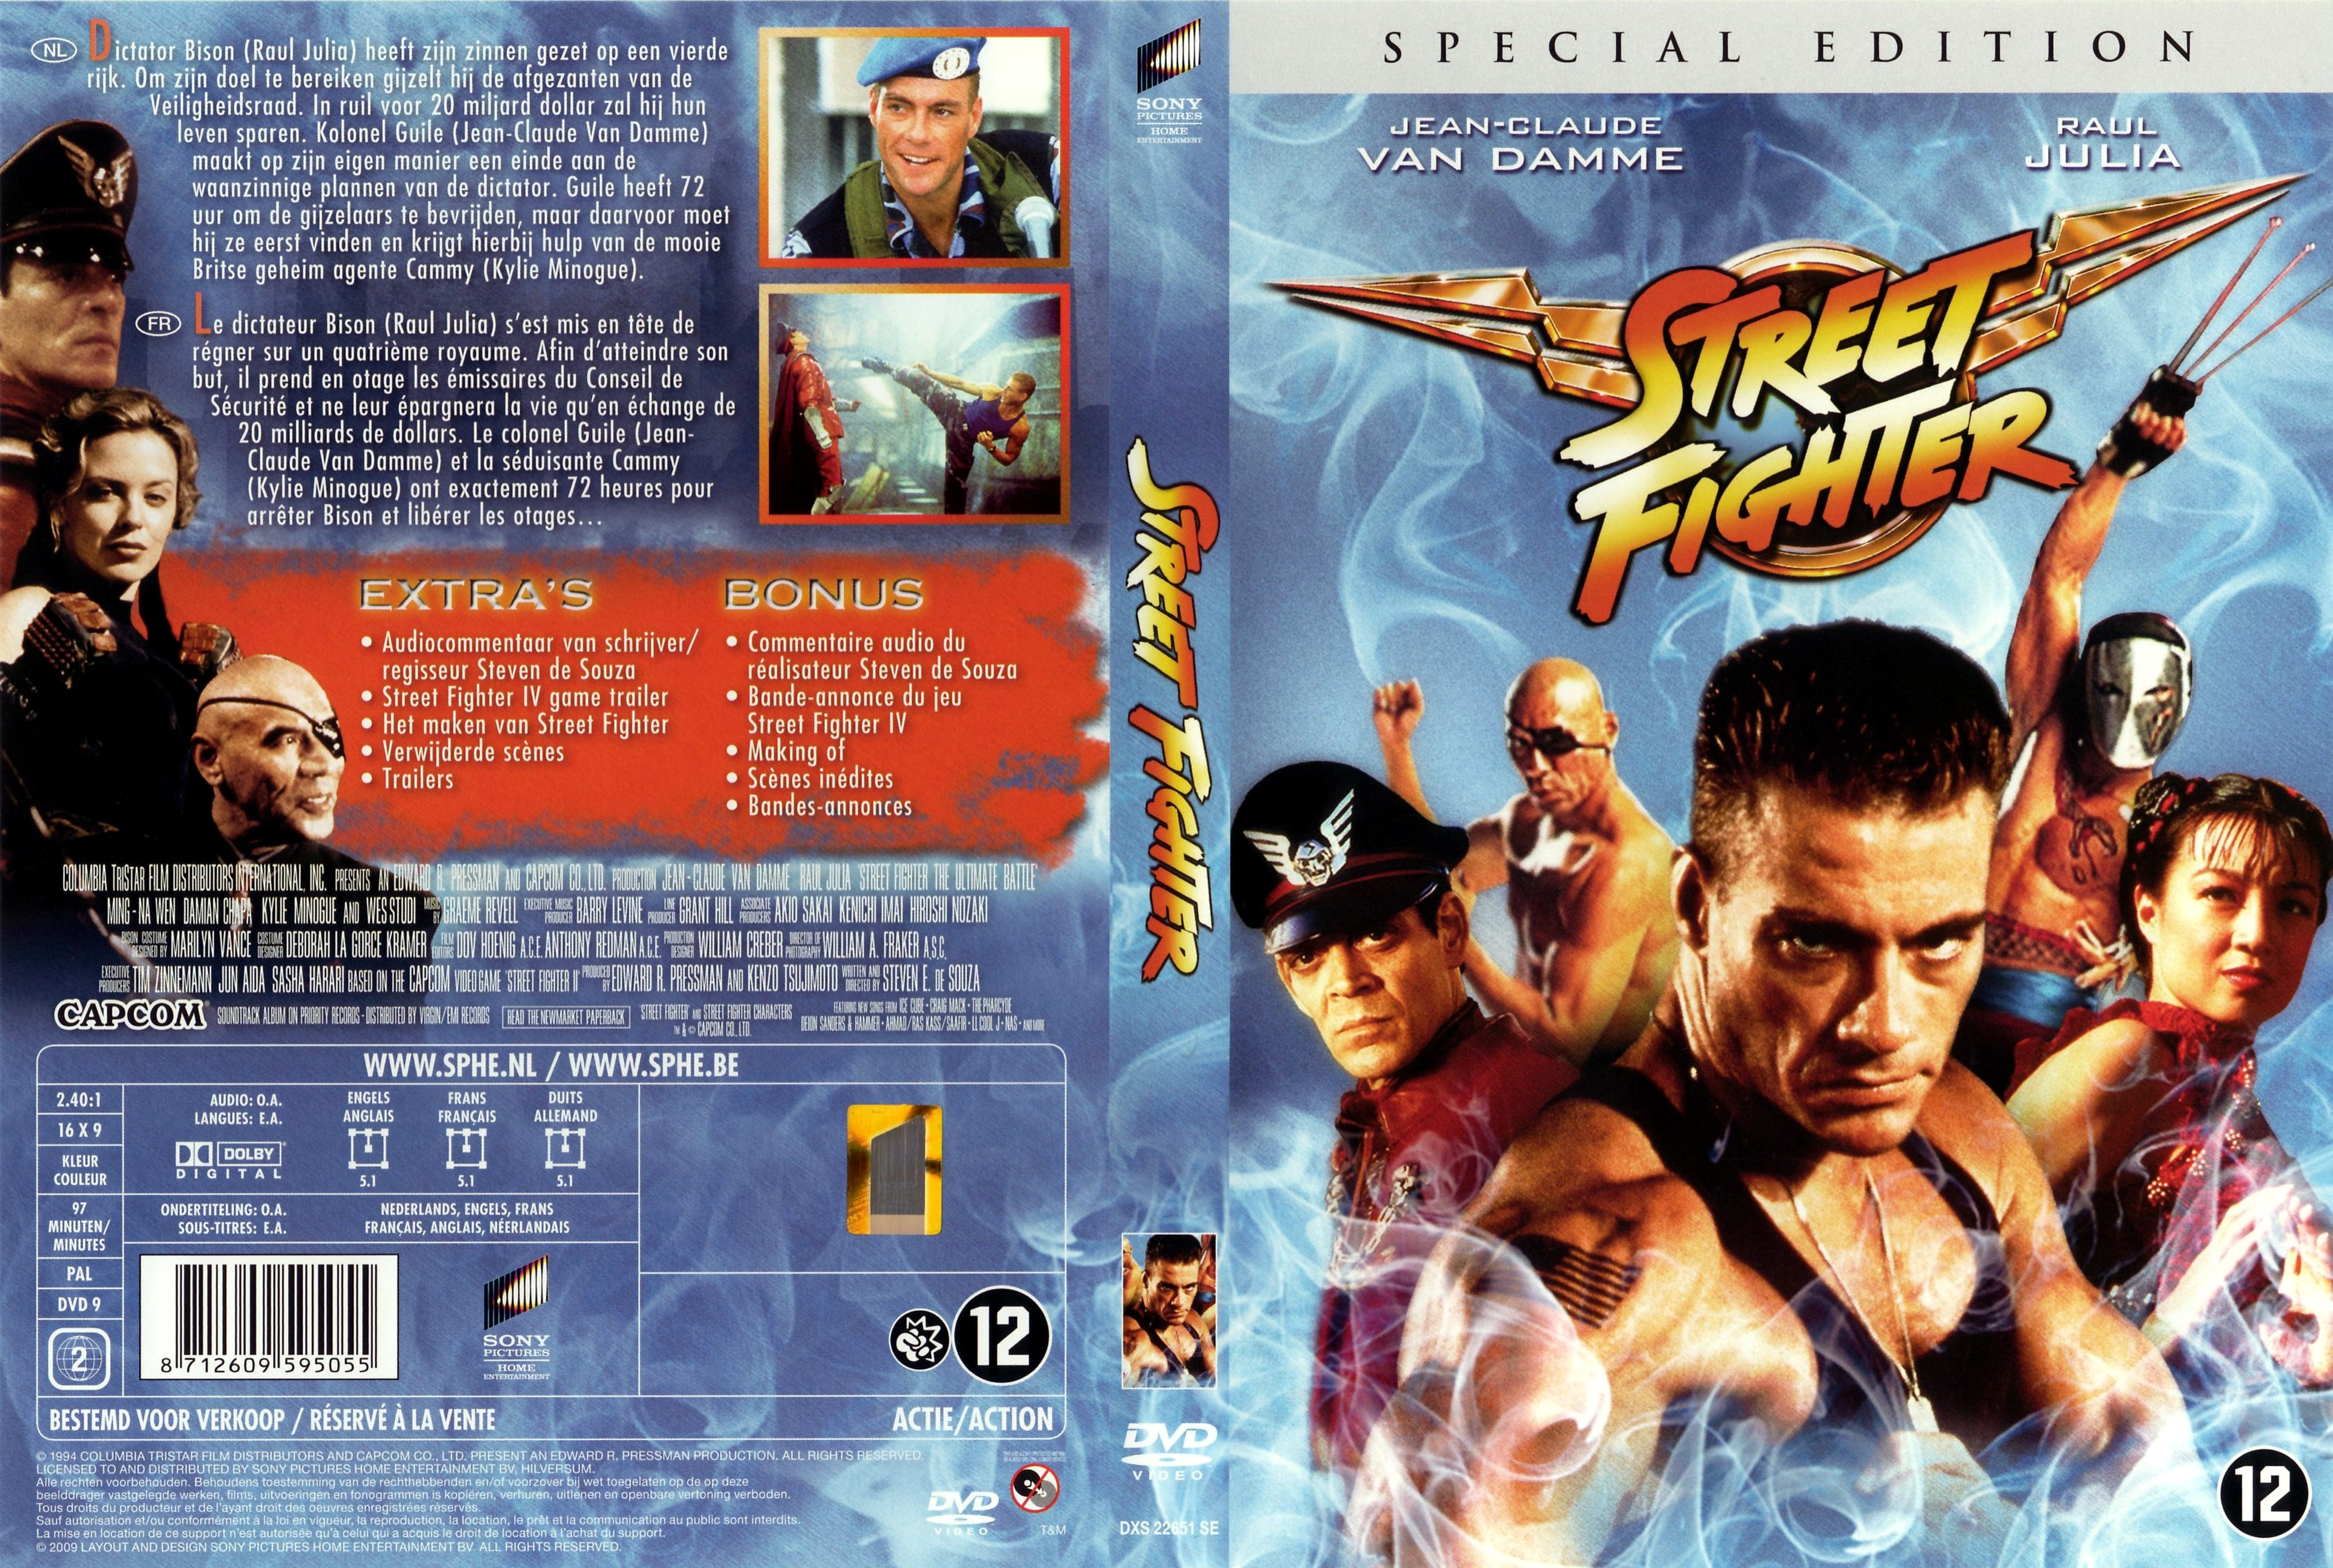 Jaquette DVD Street fighter v4